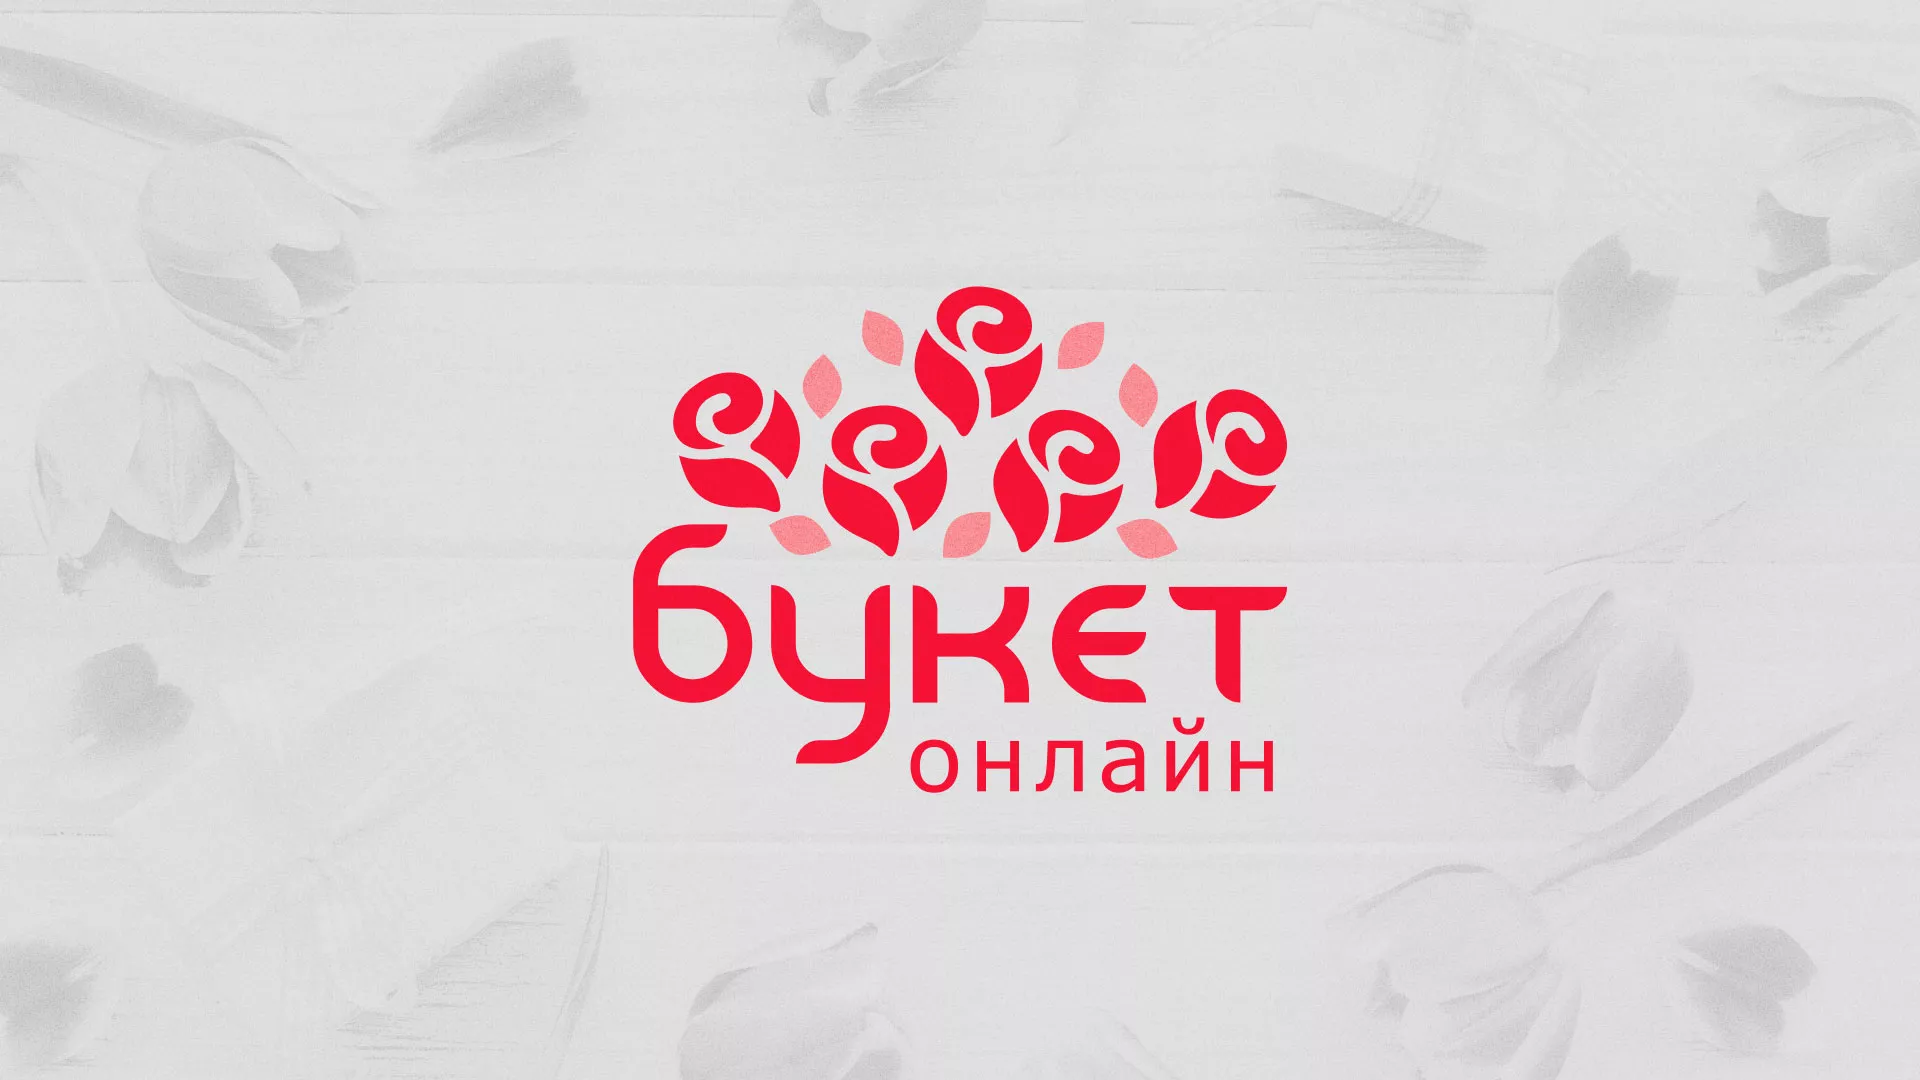 Создание интернет-магазина «Букет-онлайн» по цветам в Екатеринбурге